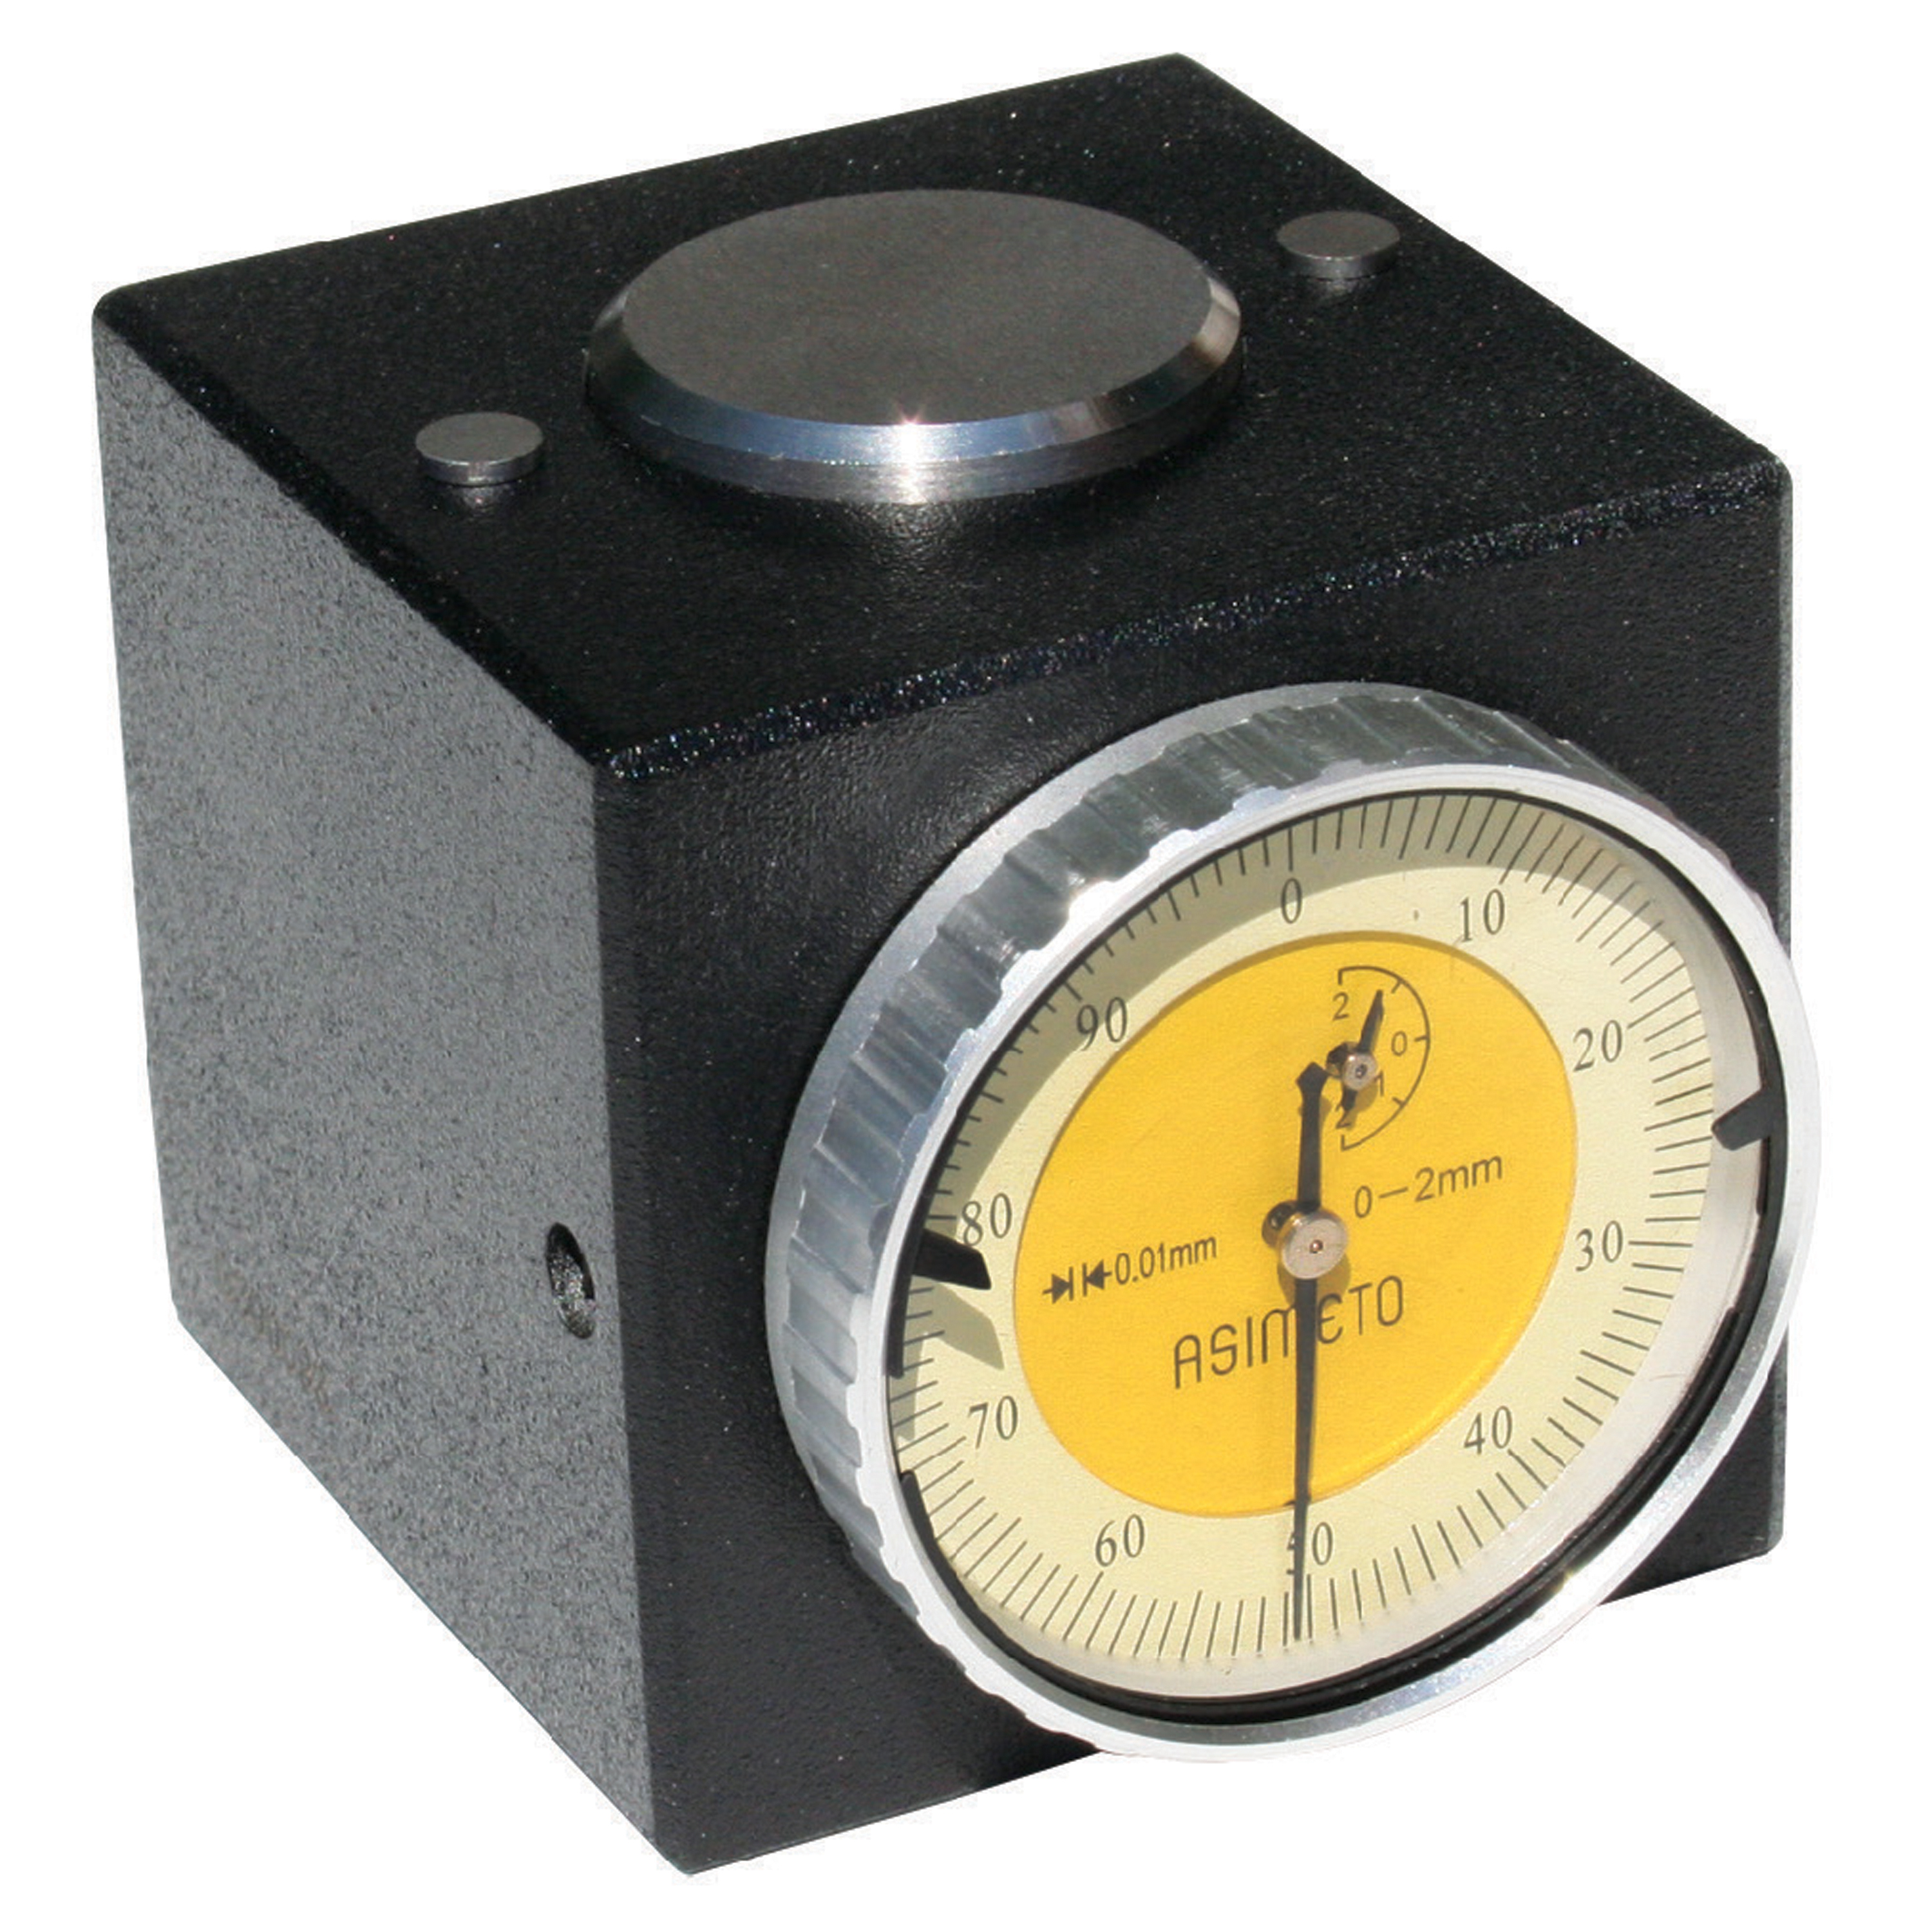 Saatli Z-Sıfırlama Aparatı (50 mm)